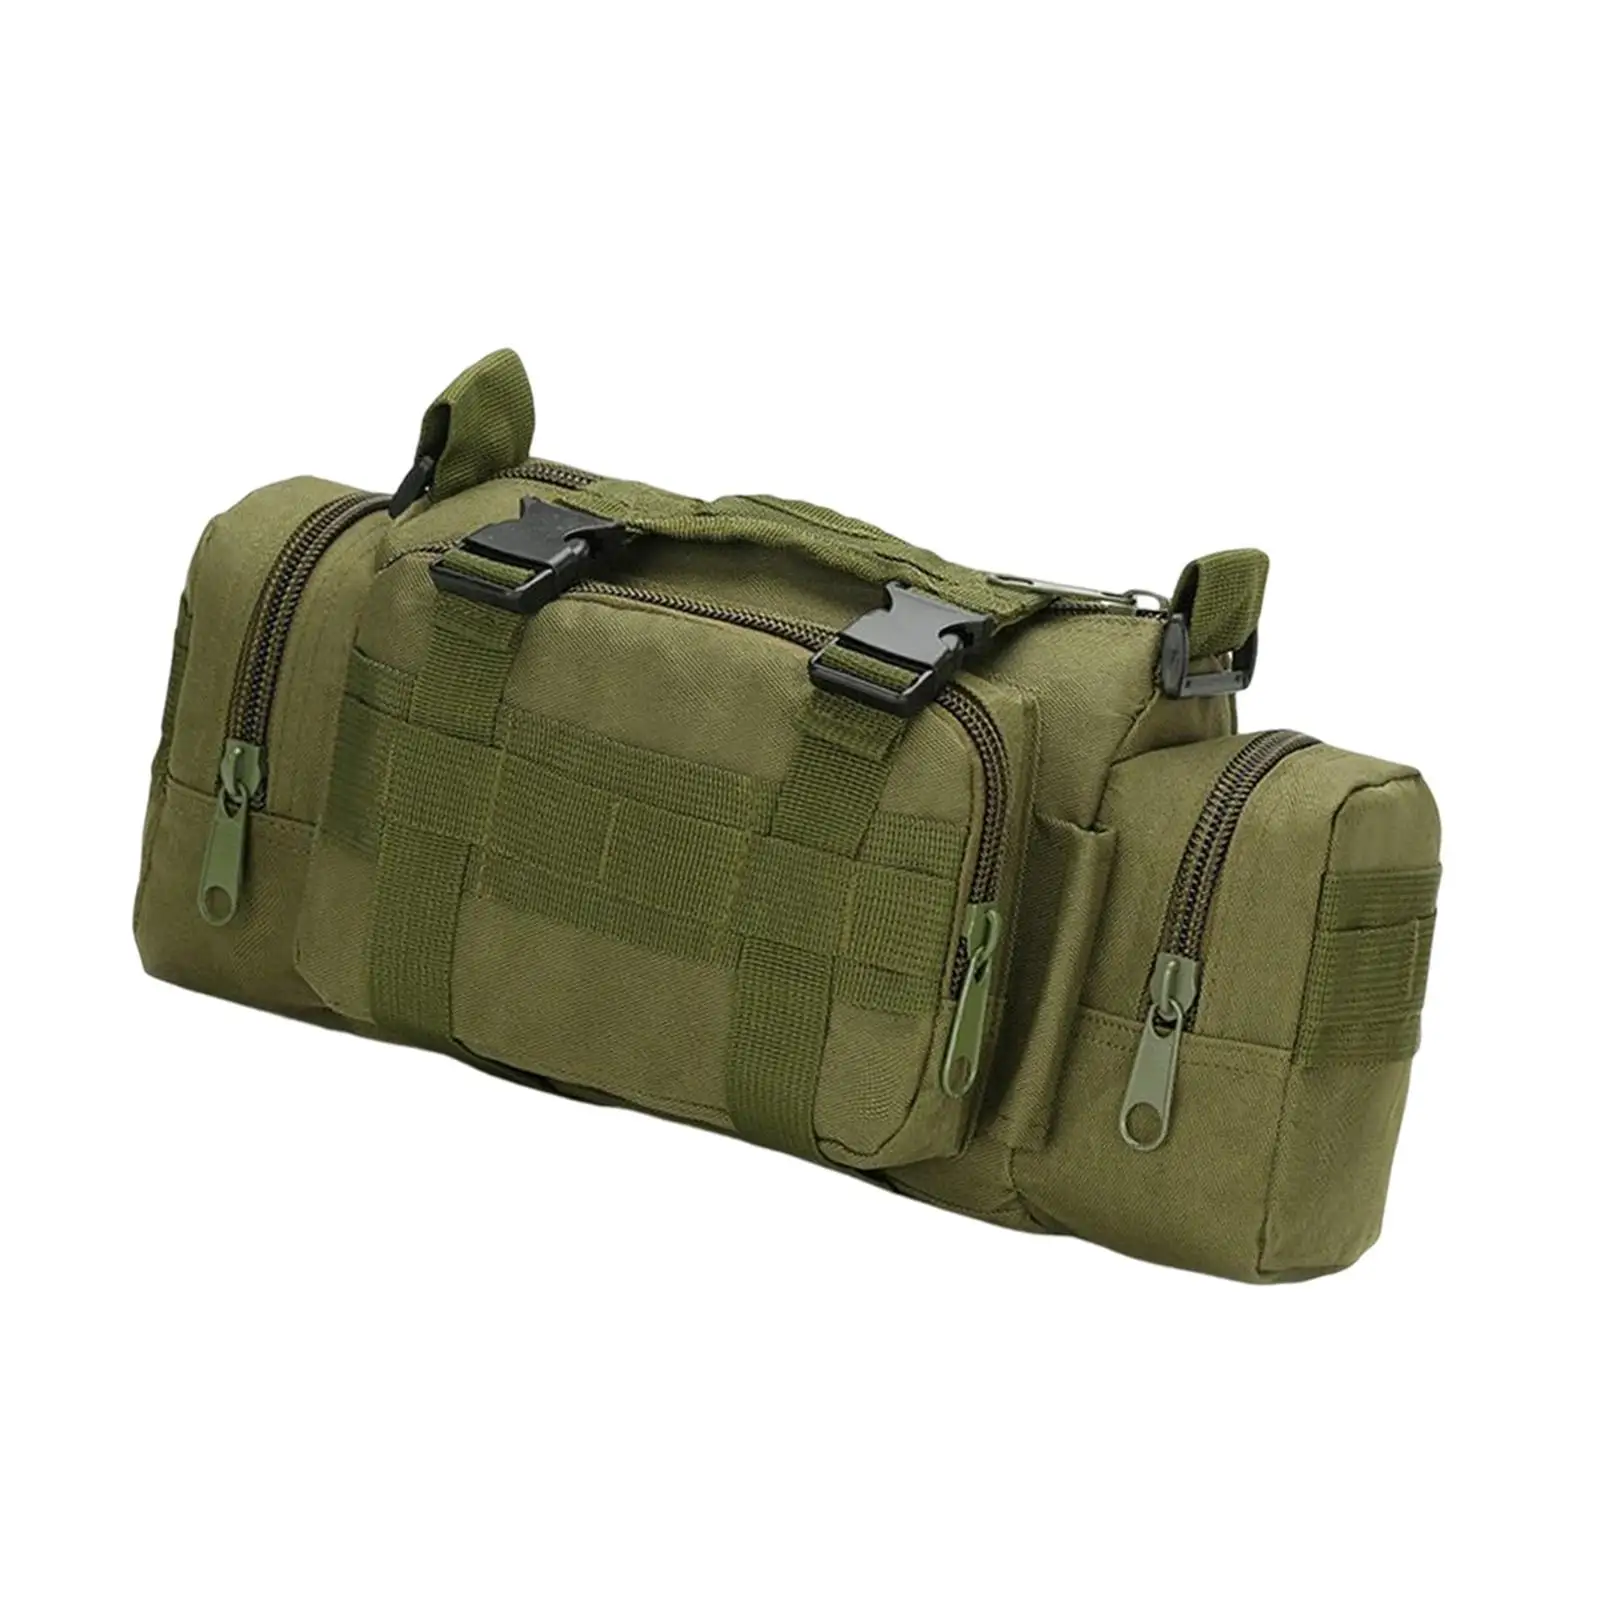 Outdoor Shoulder Bag Adjustable Strap Activities Waterproof Supplies Accessories Waist Bag for Travel Hiking Men Women Sports